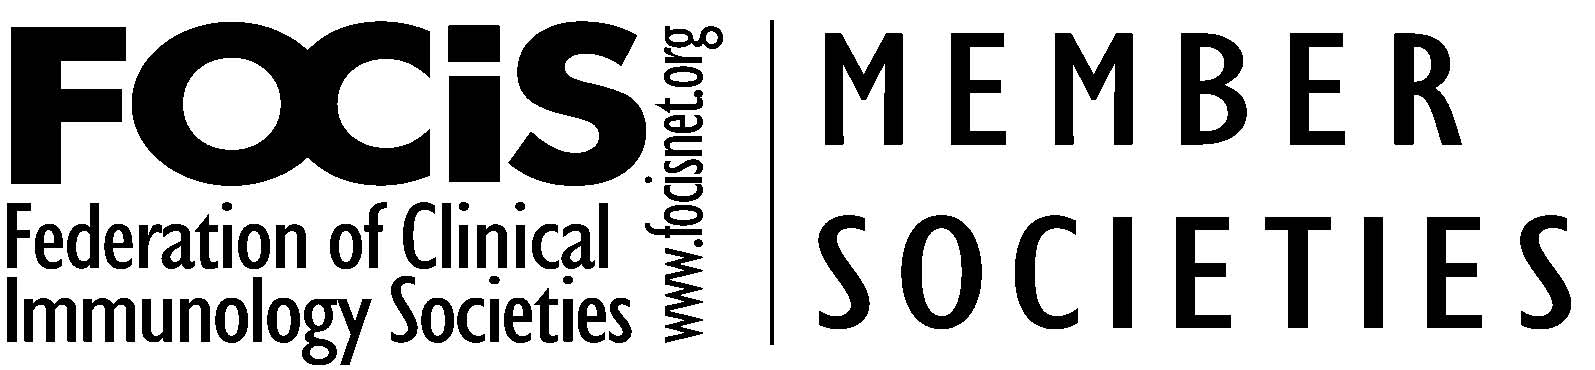 member society logo